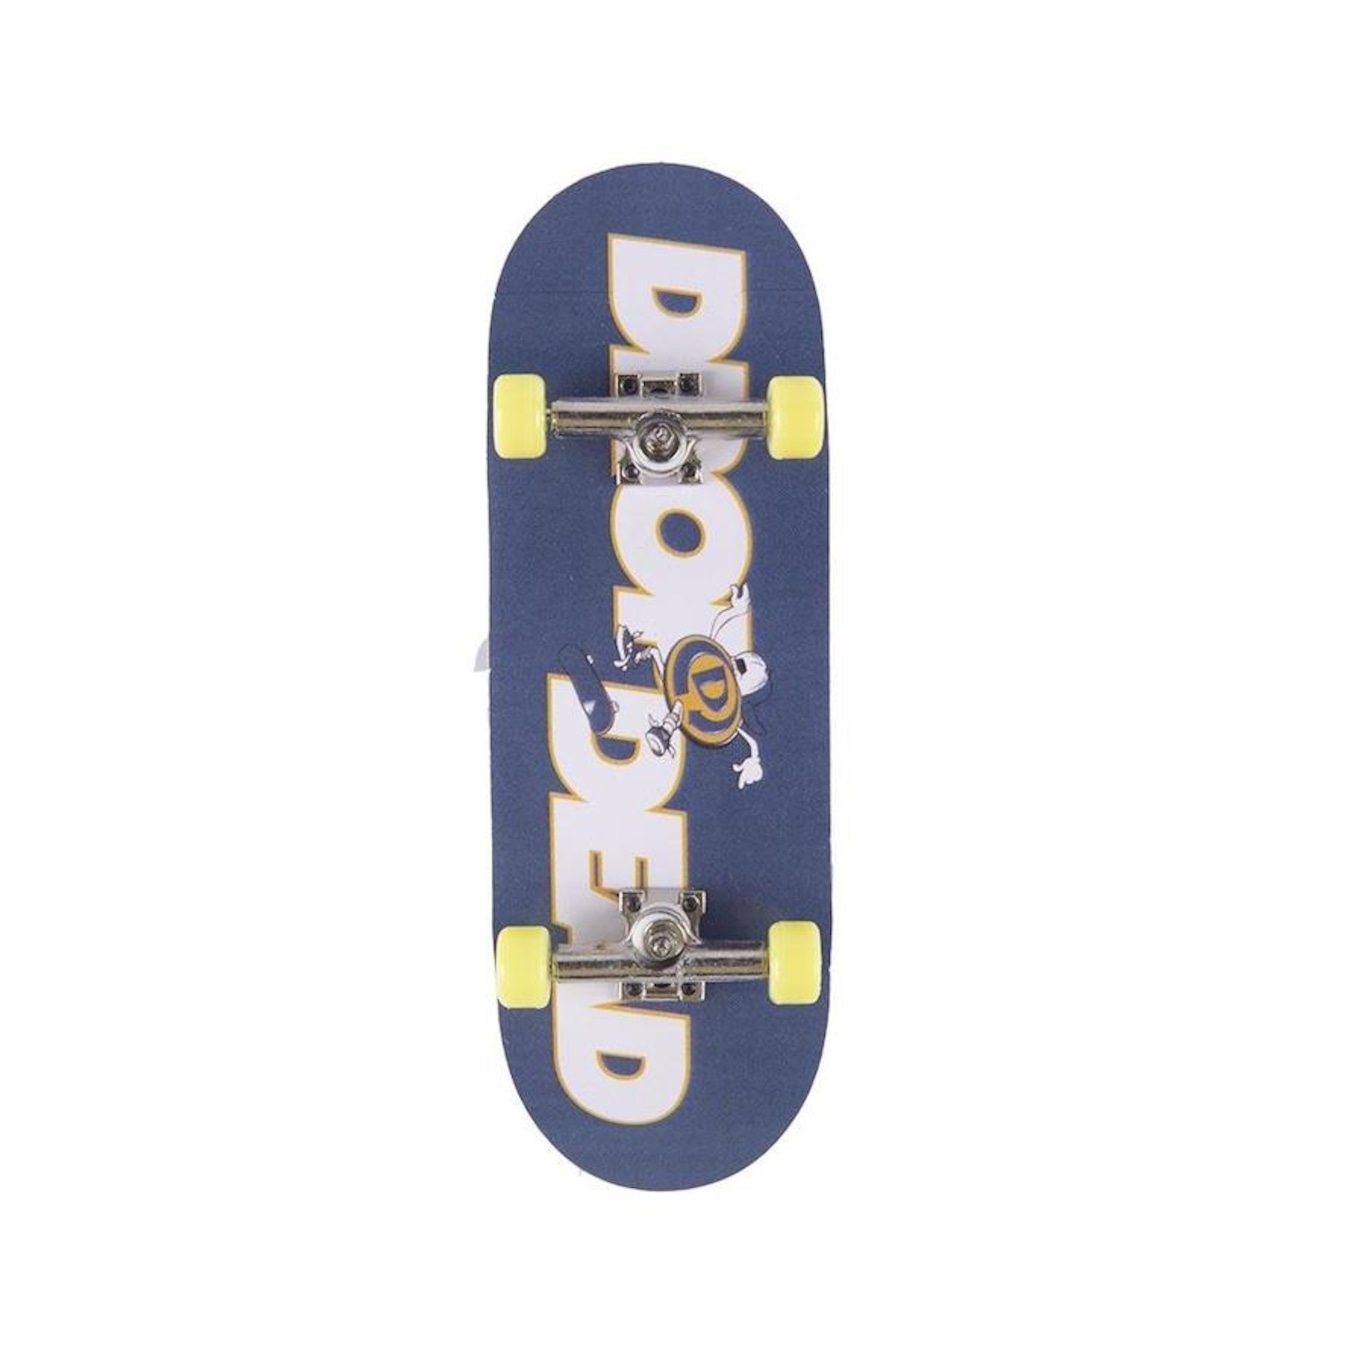 Skate de Dedo Profissional De Madeira Com Rolamento Fingerboard